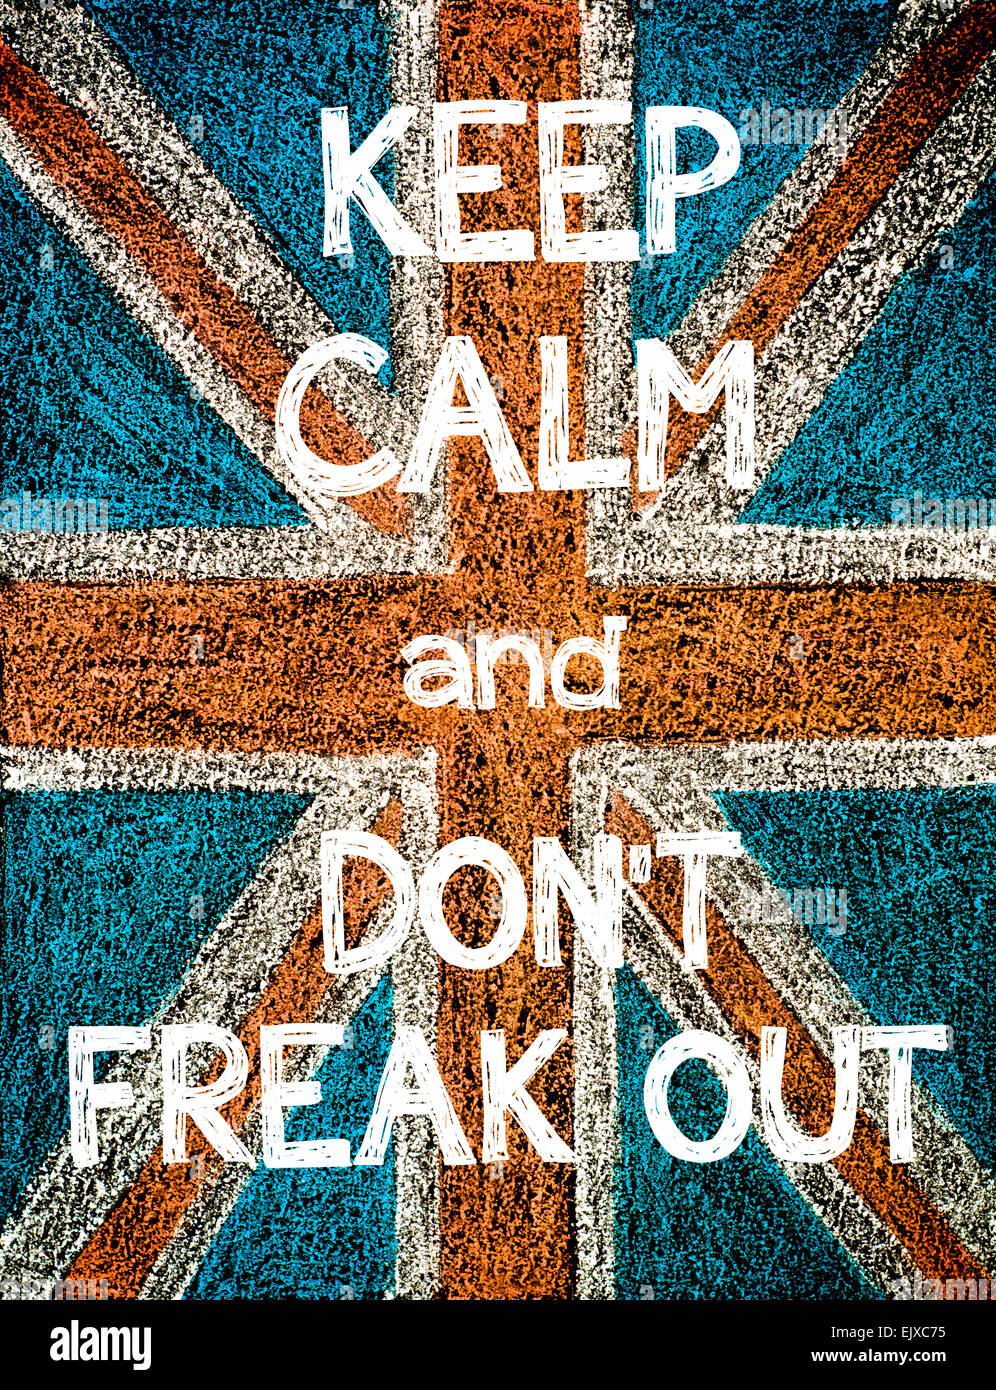 Ruhe bewahren und nicht ausflippen. Vereinigtes Königreich (British Union Jack) Flagge, Vintage Handzeichnung mit Kreide auf die Tafel, humor Konzept Bild Stockfoto